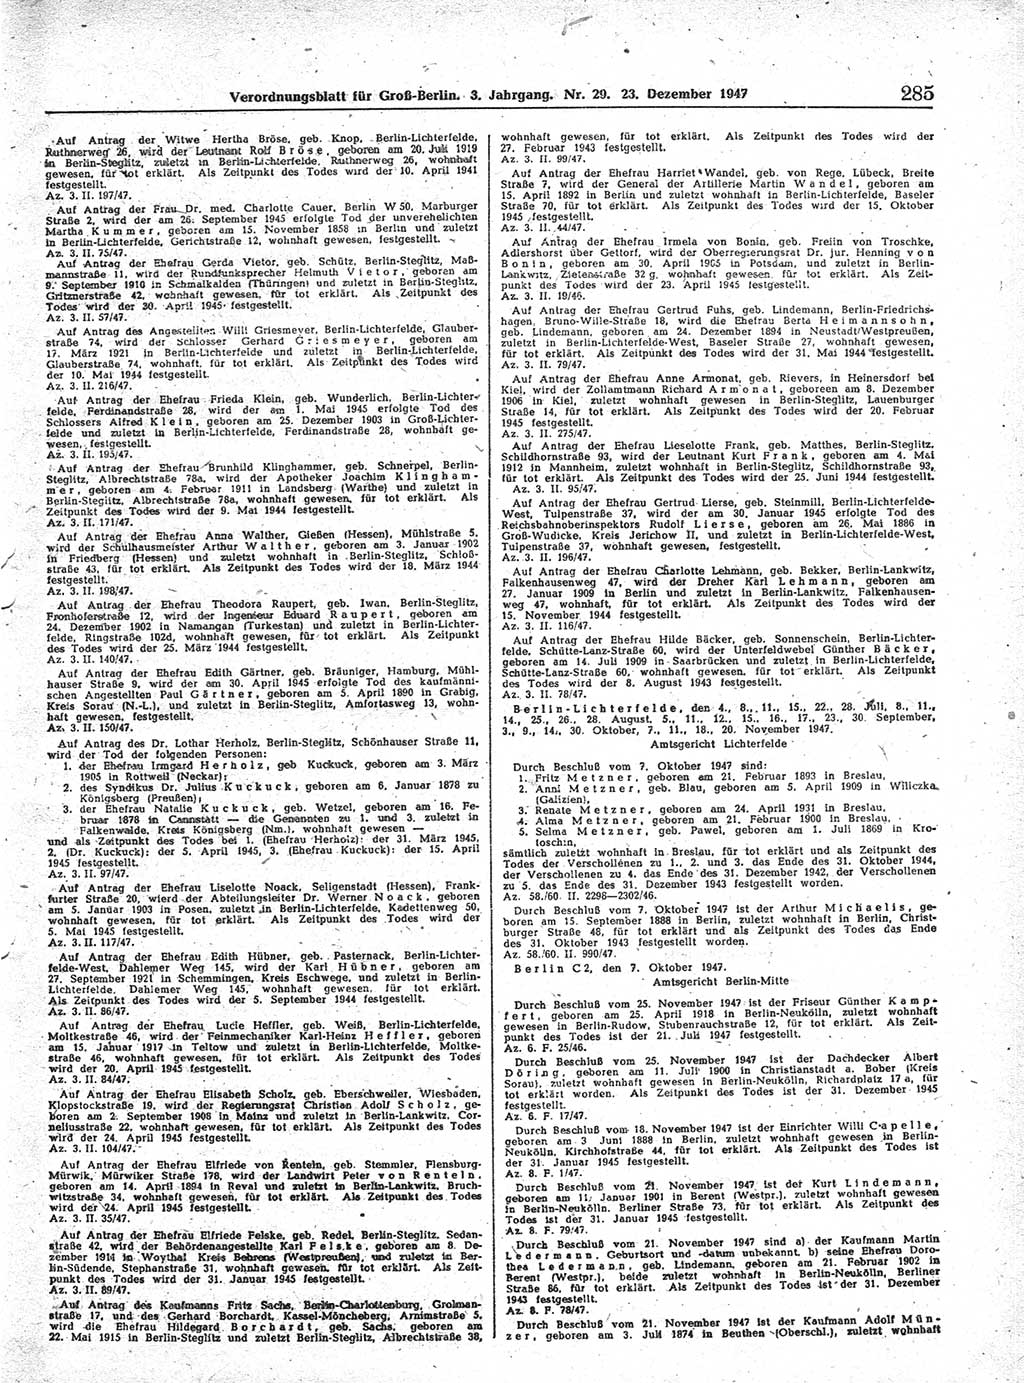 Verordnungsblatt (VOBl.) für Groß-Berlin 1947, Seite 285 (VOBl. Bln. 1947, S. 285)